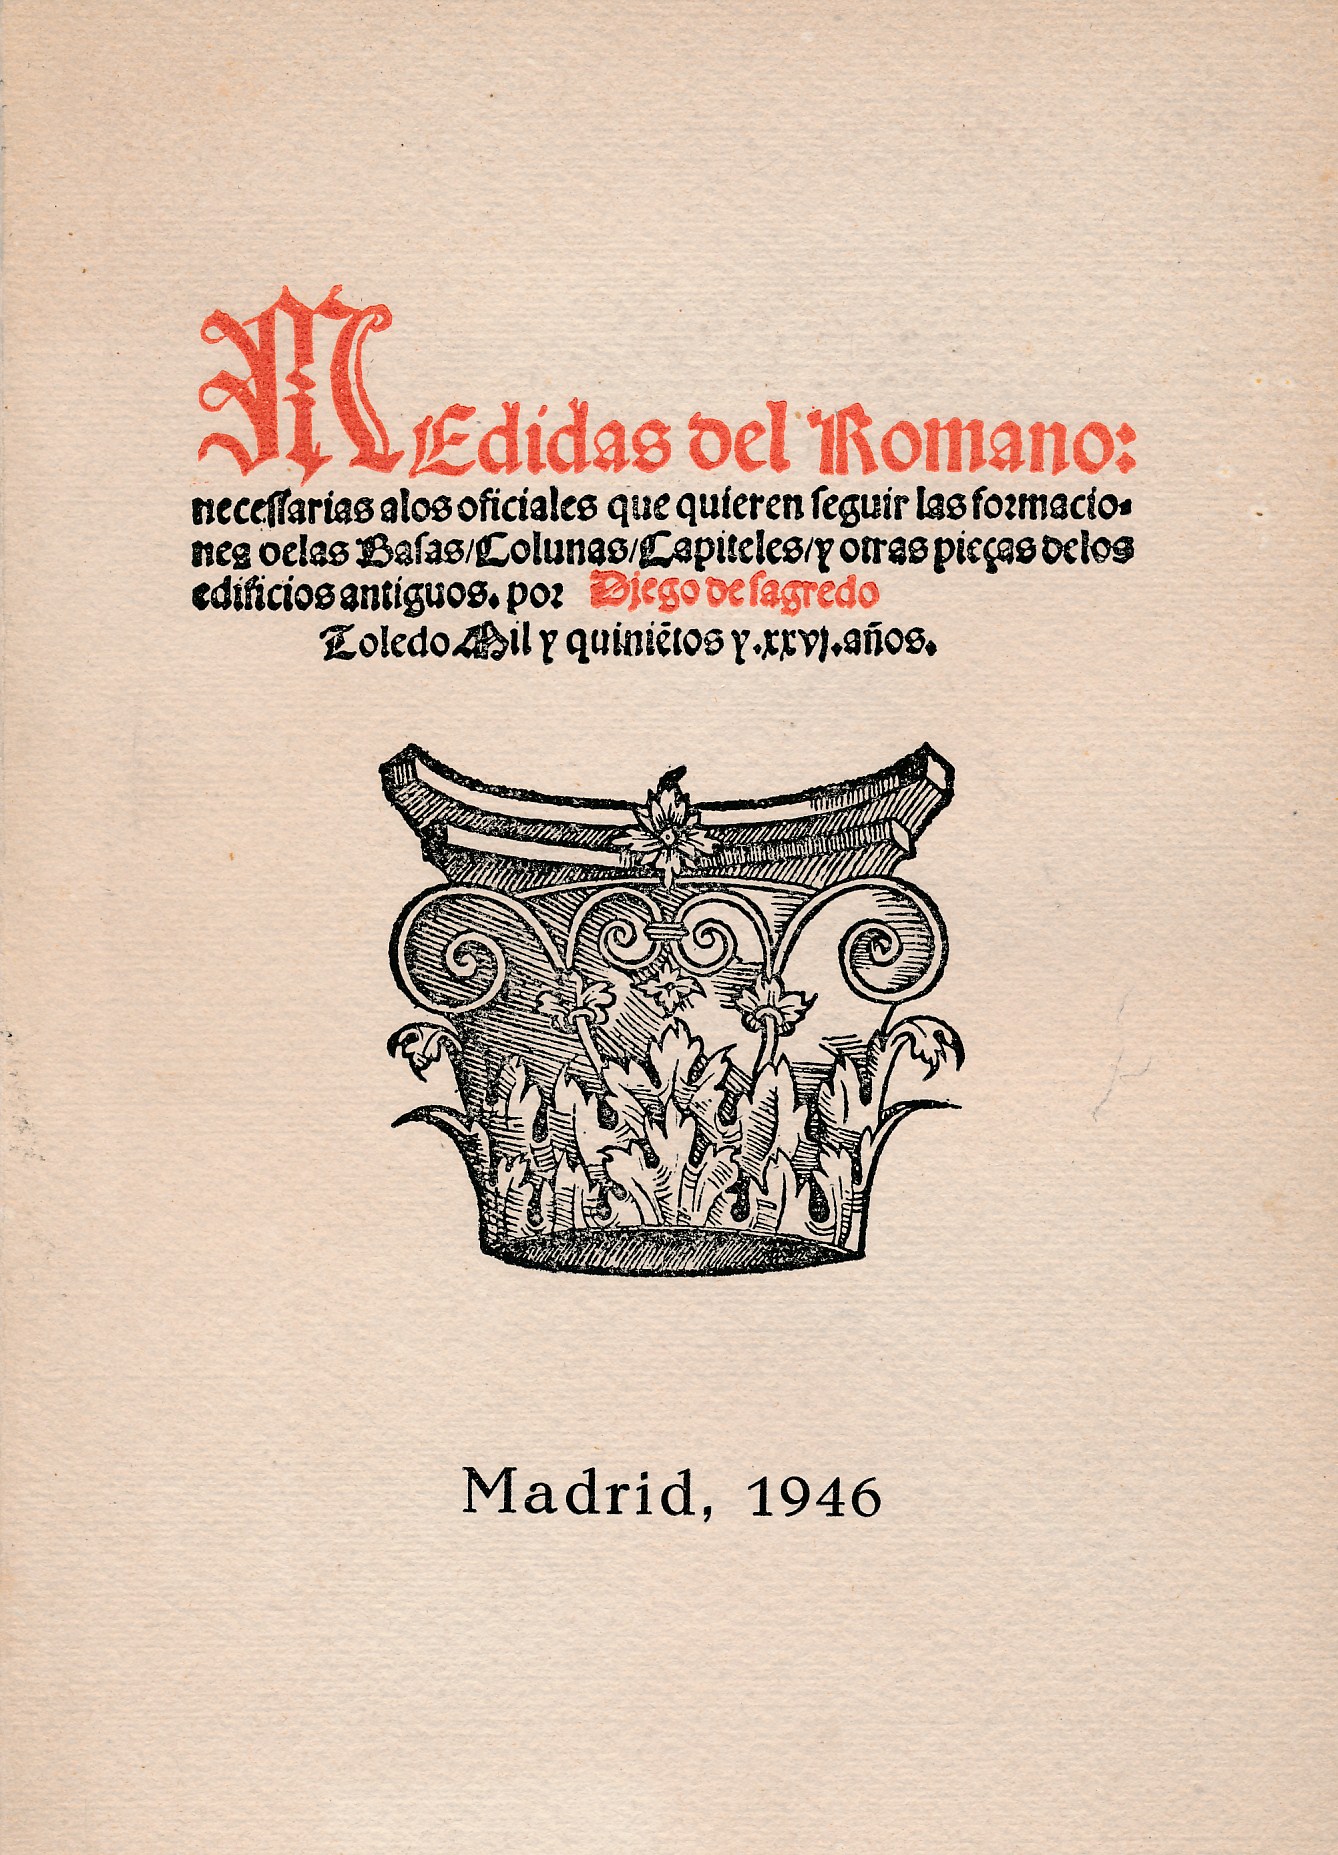 Medidas del Romano. Limited edition